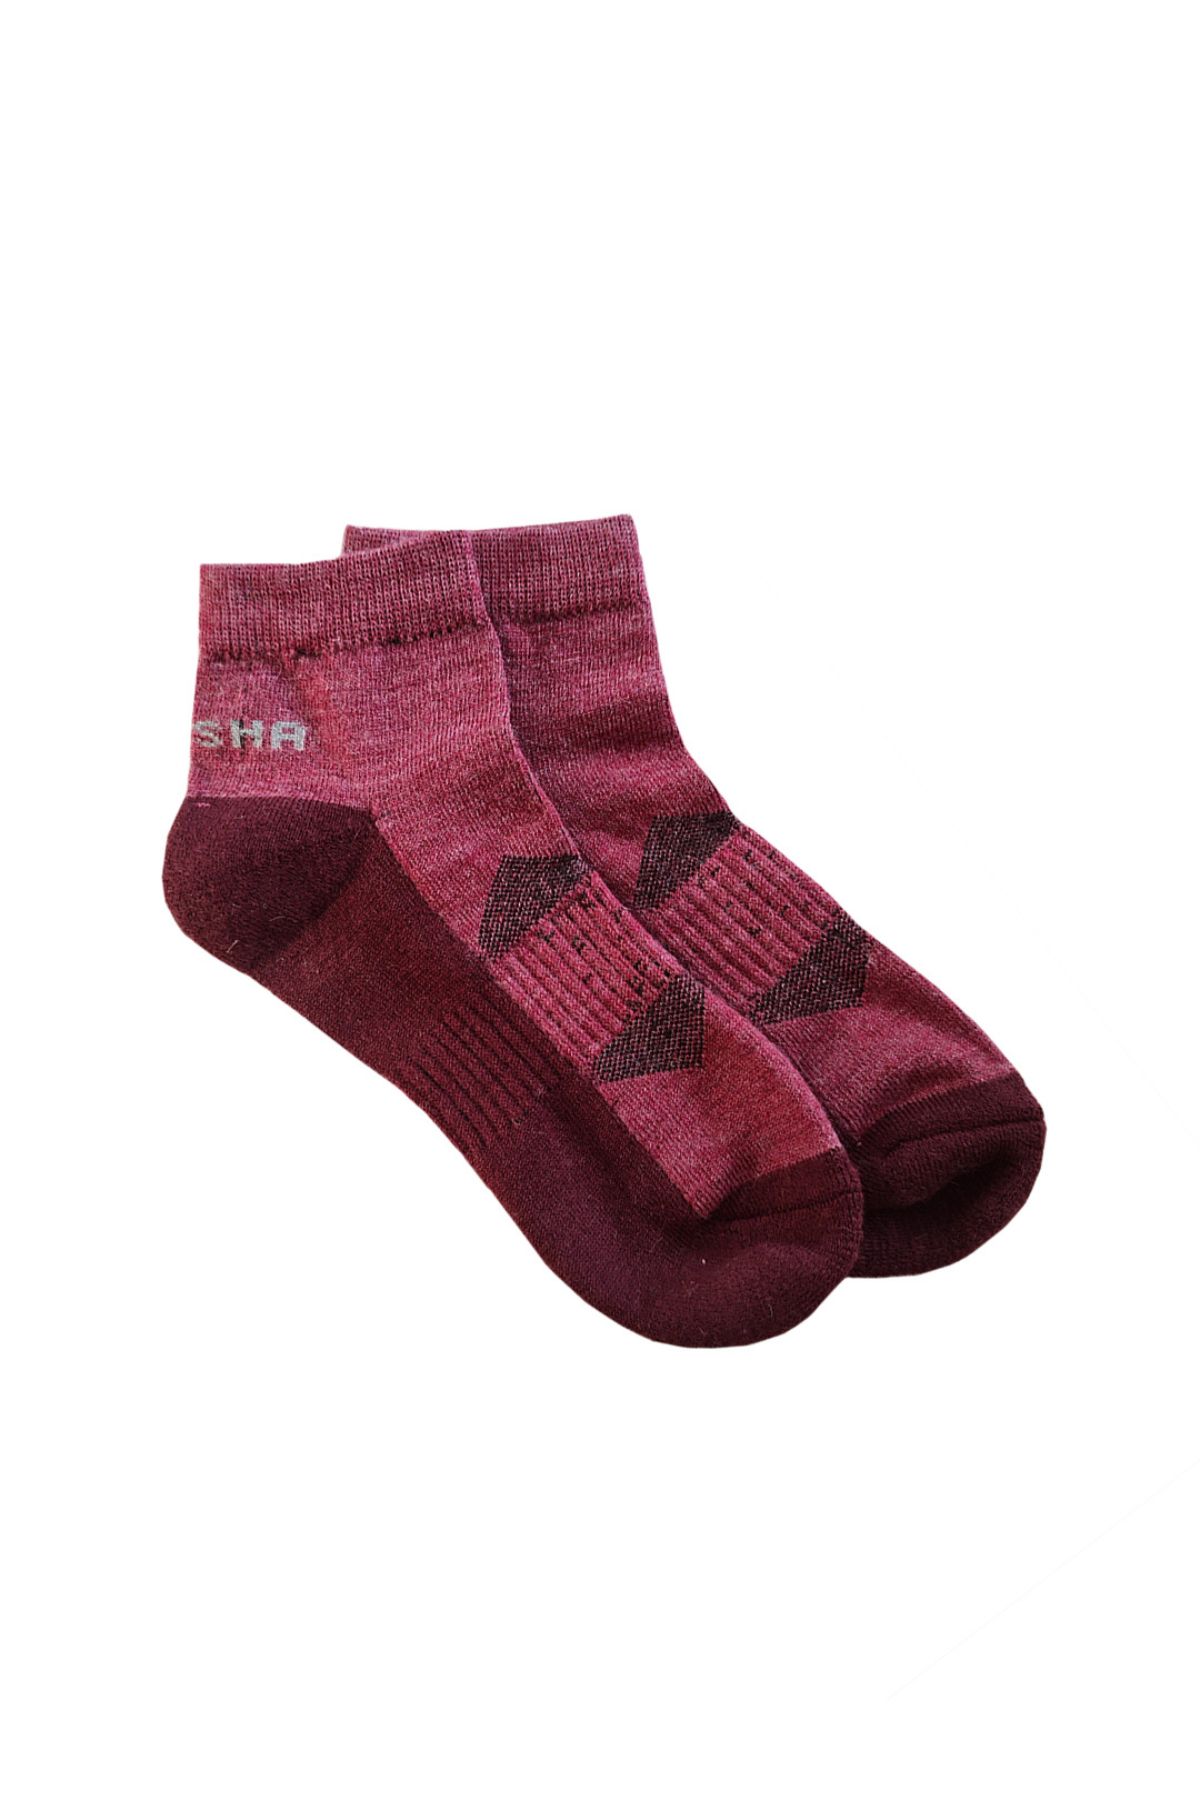 Namik No Blister Merino Wool Red Maroon Ankle Socks | Women